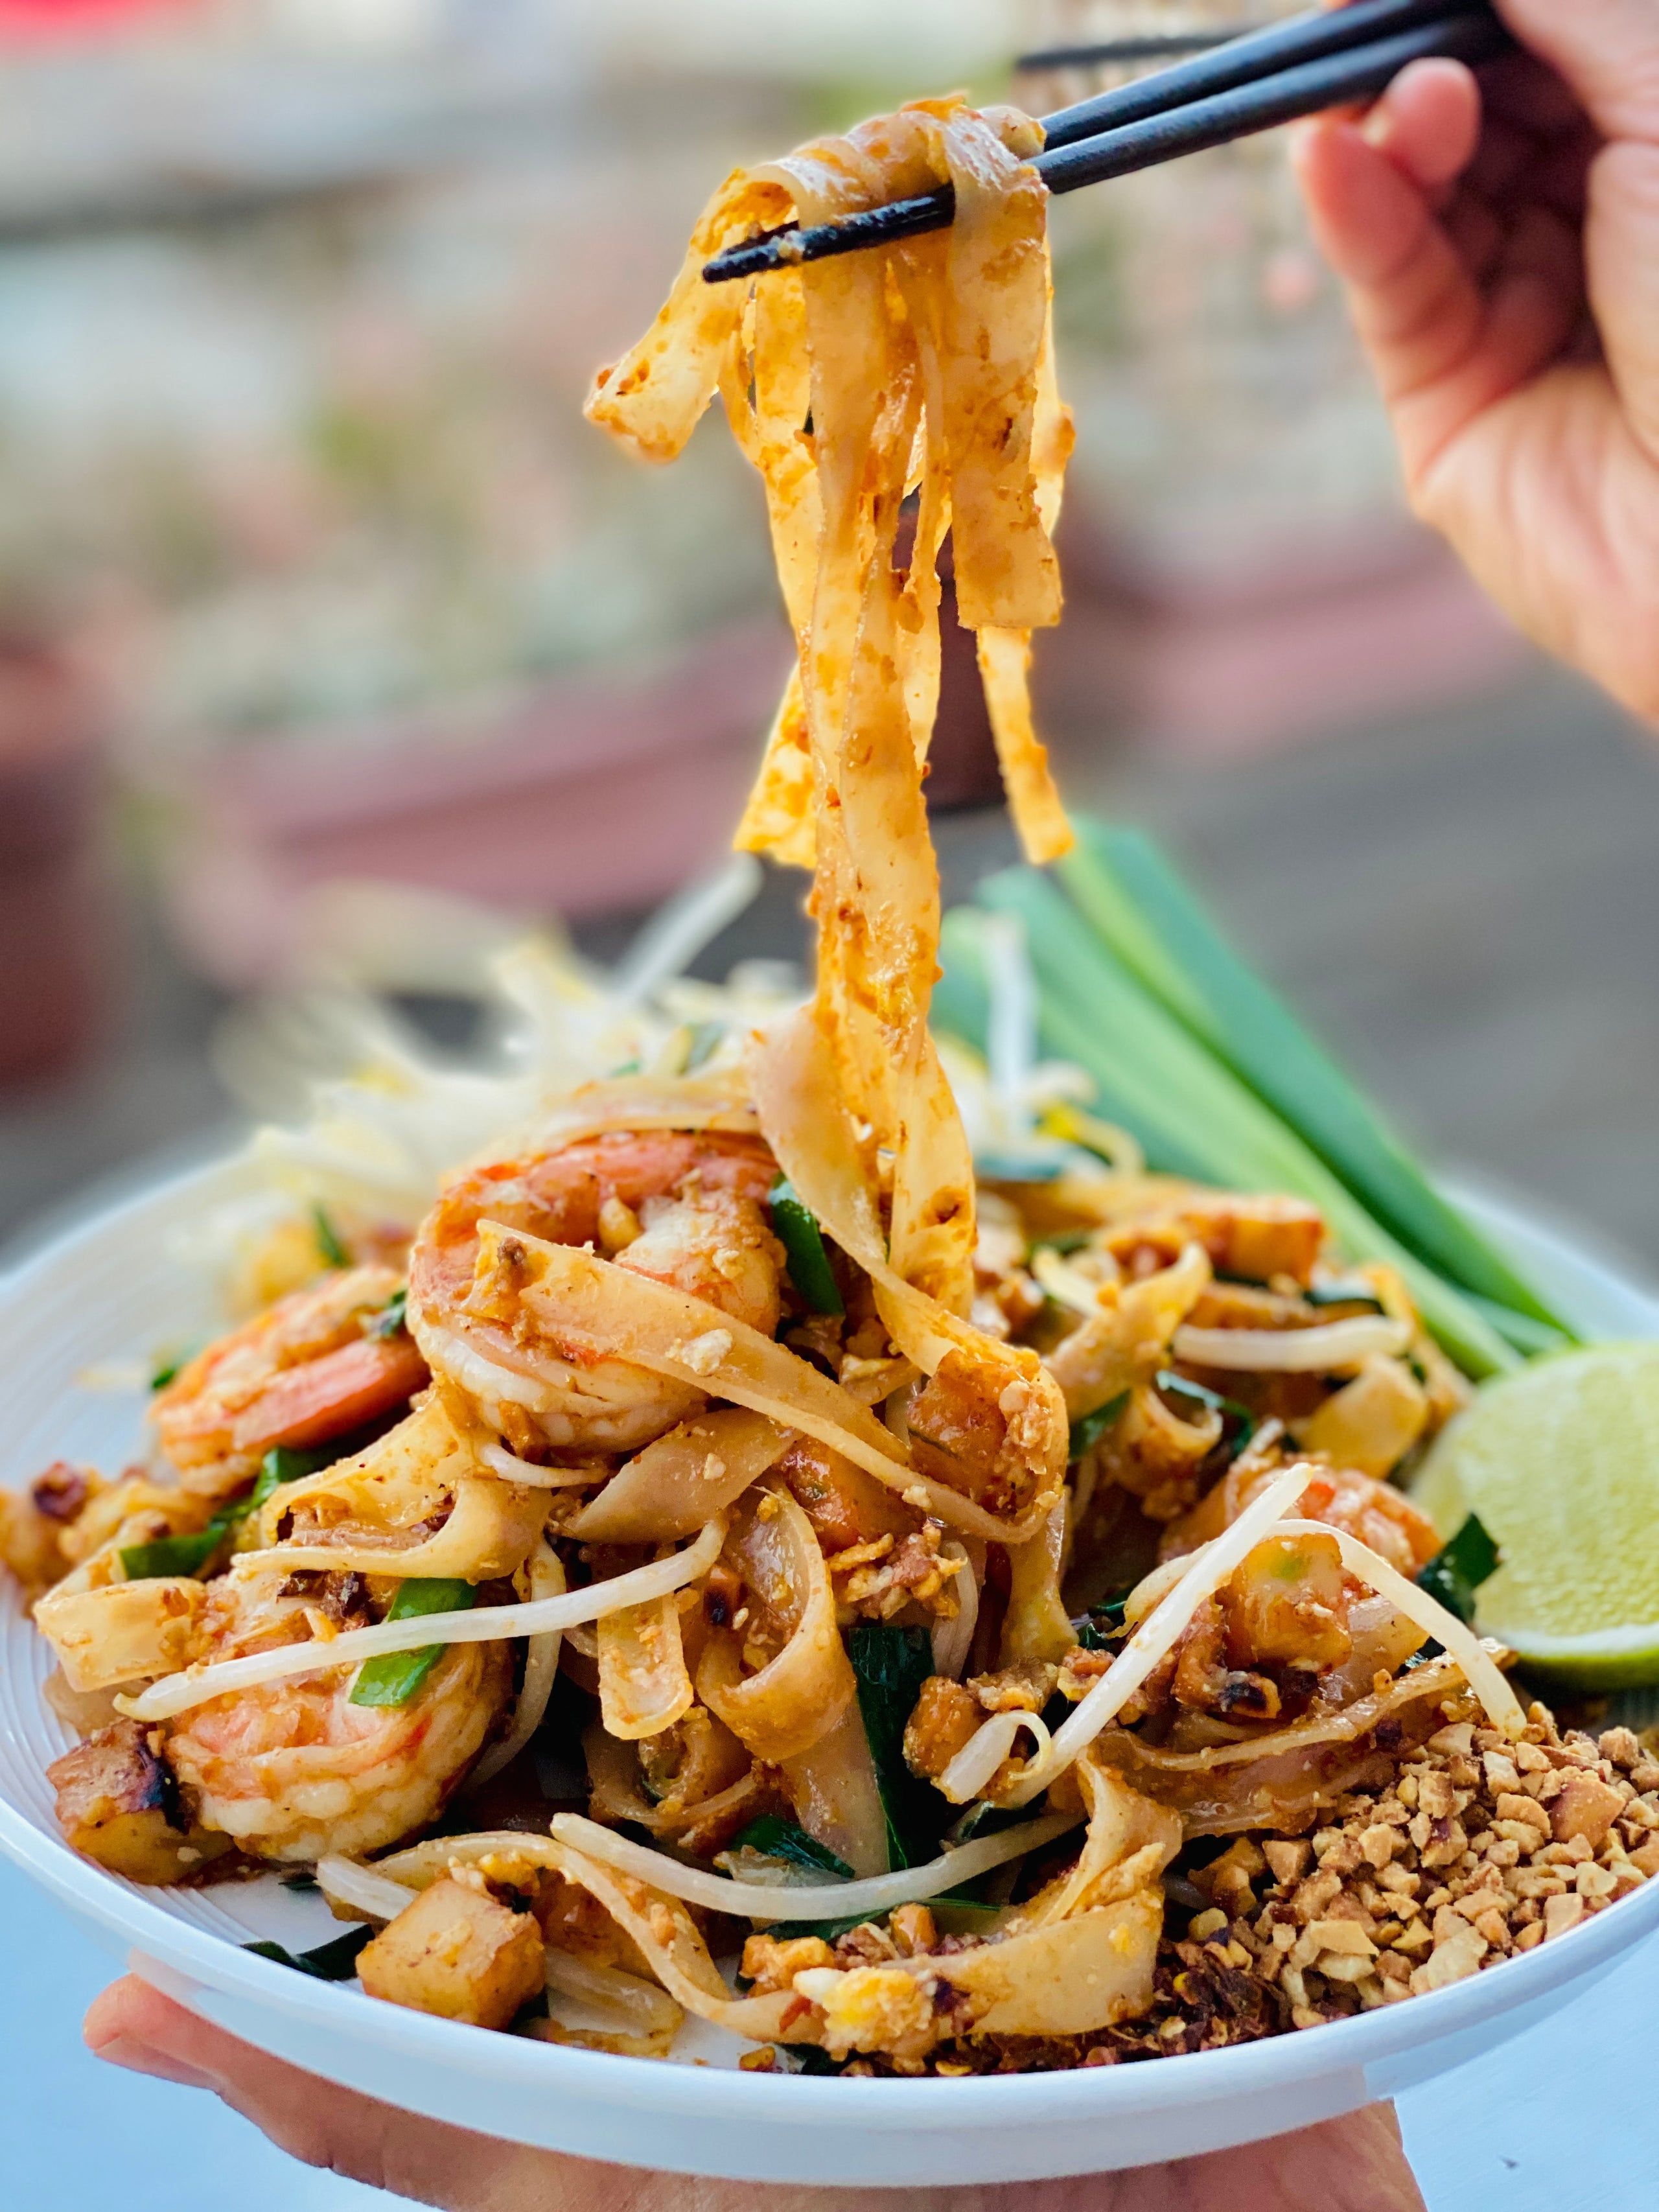 Tom Kha, Pad Thai Shrimp, Kanom Krook: Sept 17, 2022